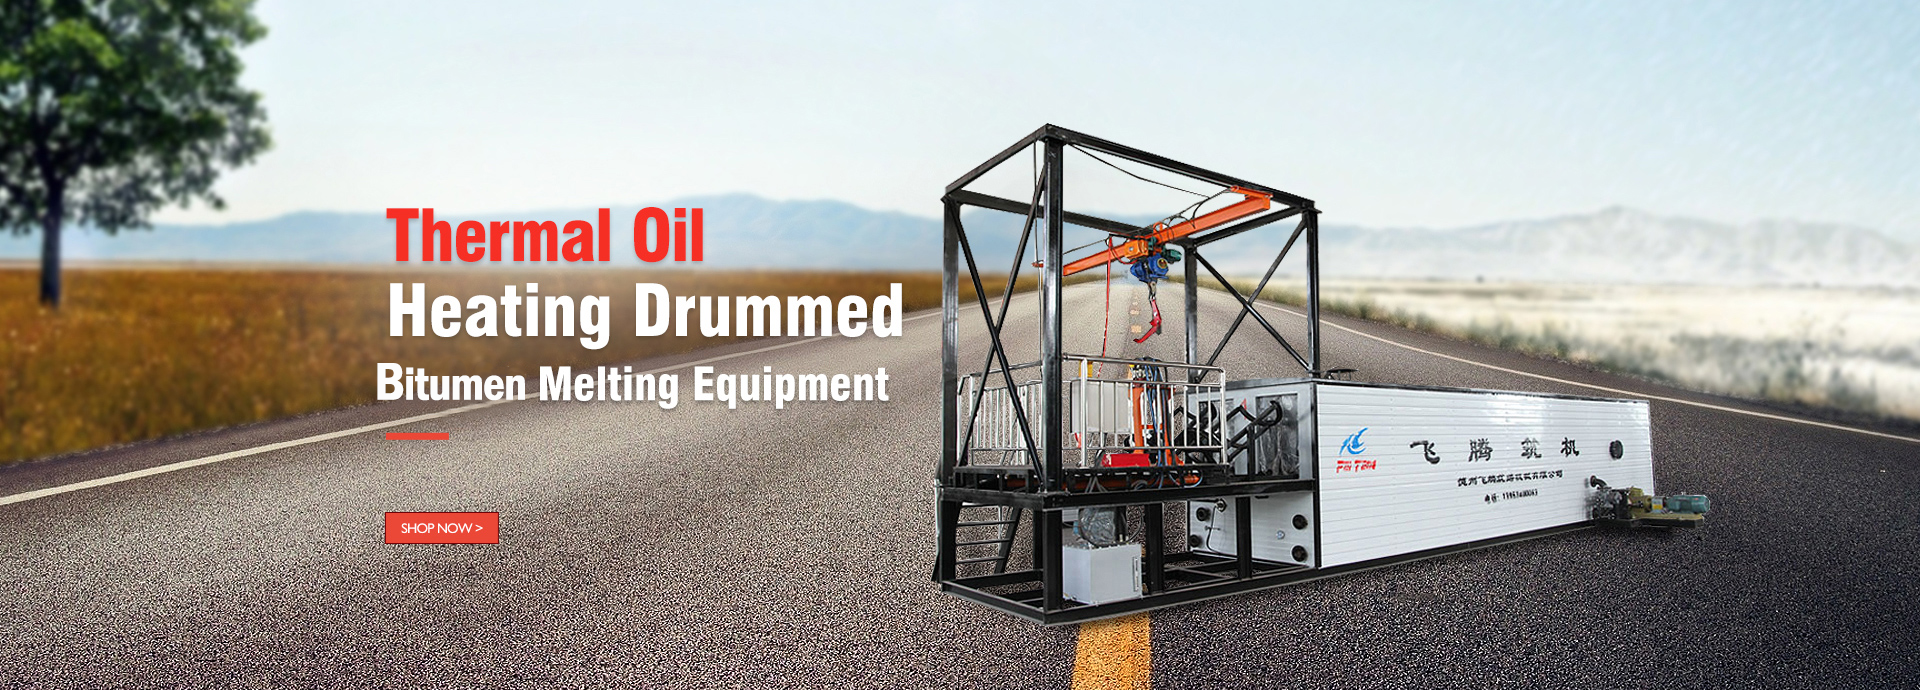 bitumen-melting-equipment